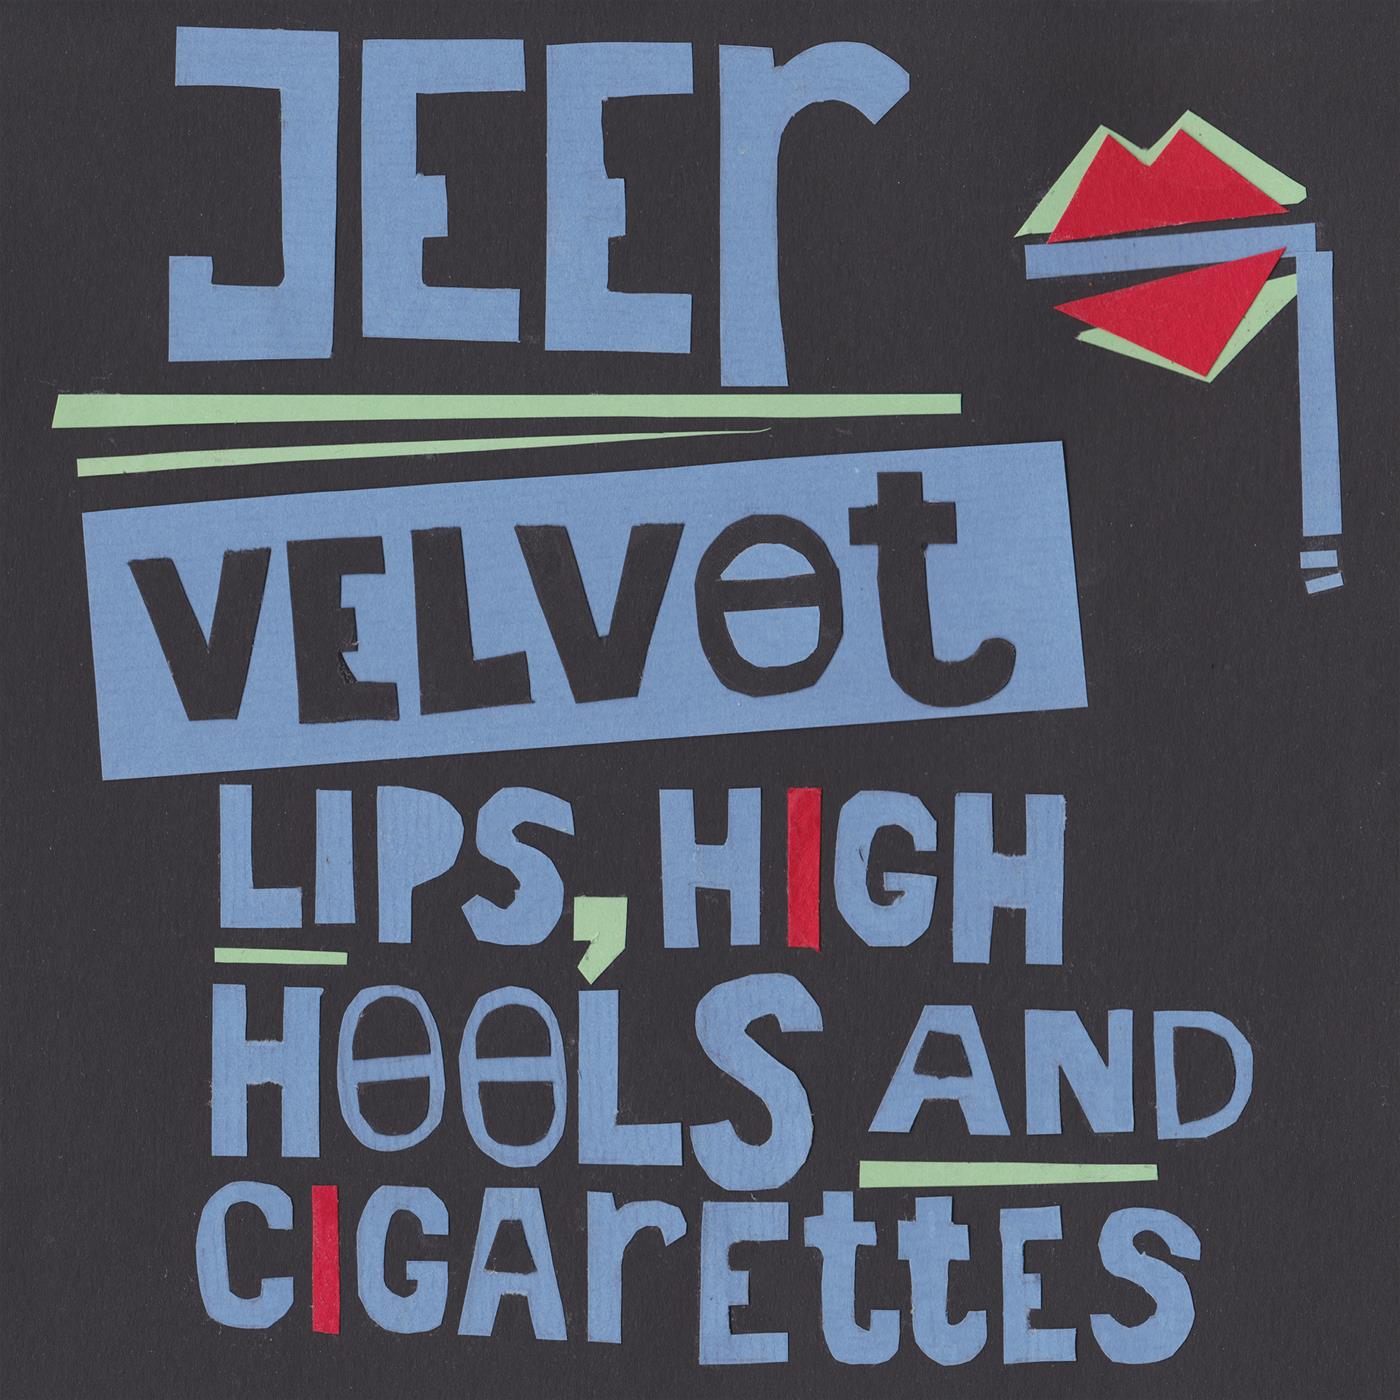 Velvet lips, high heels and cigarettes